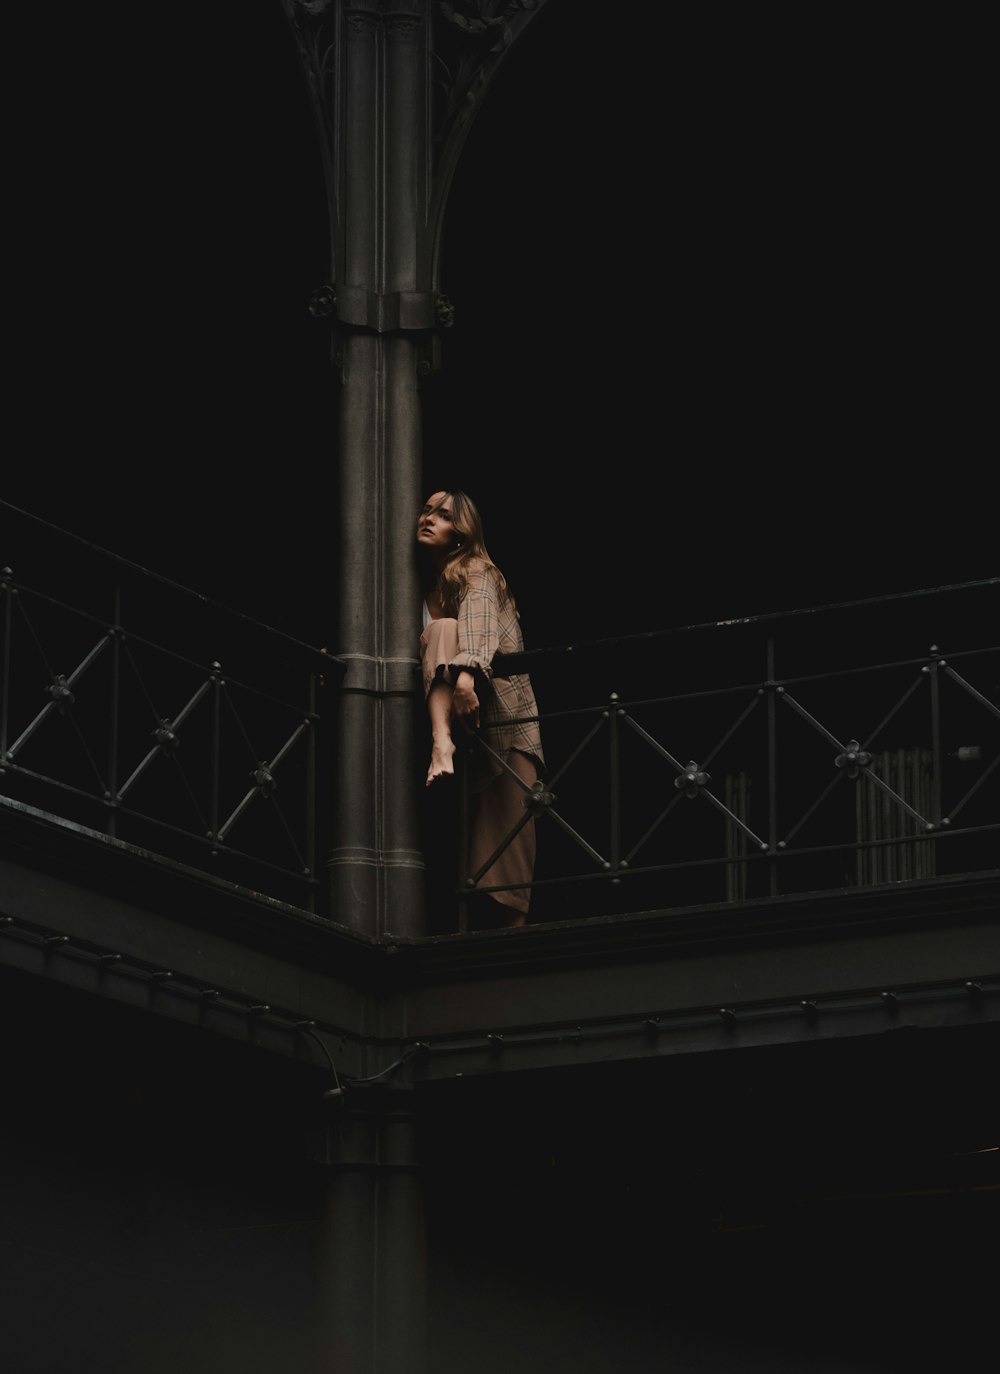 Una persona parada en un puente